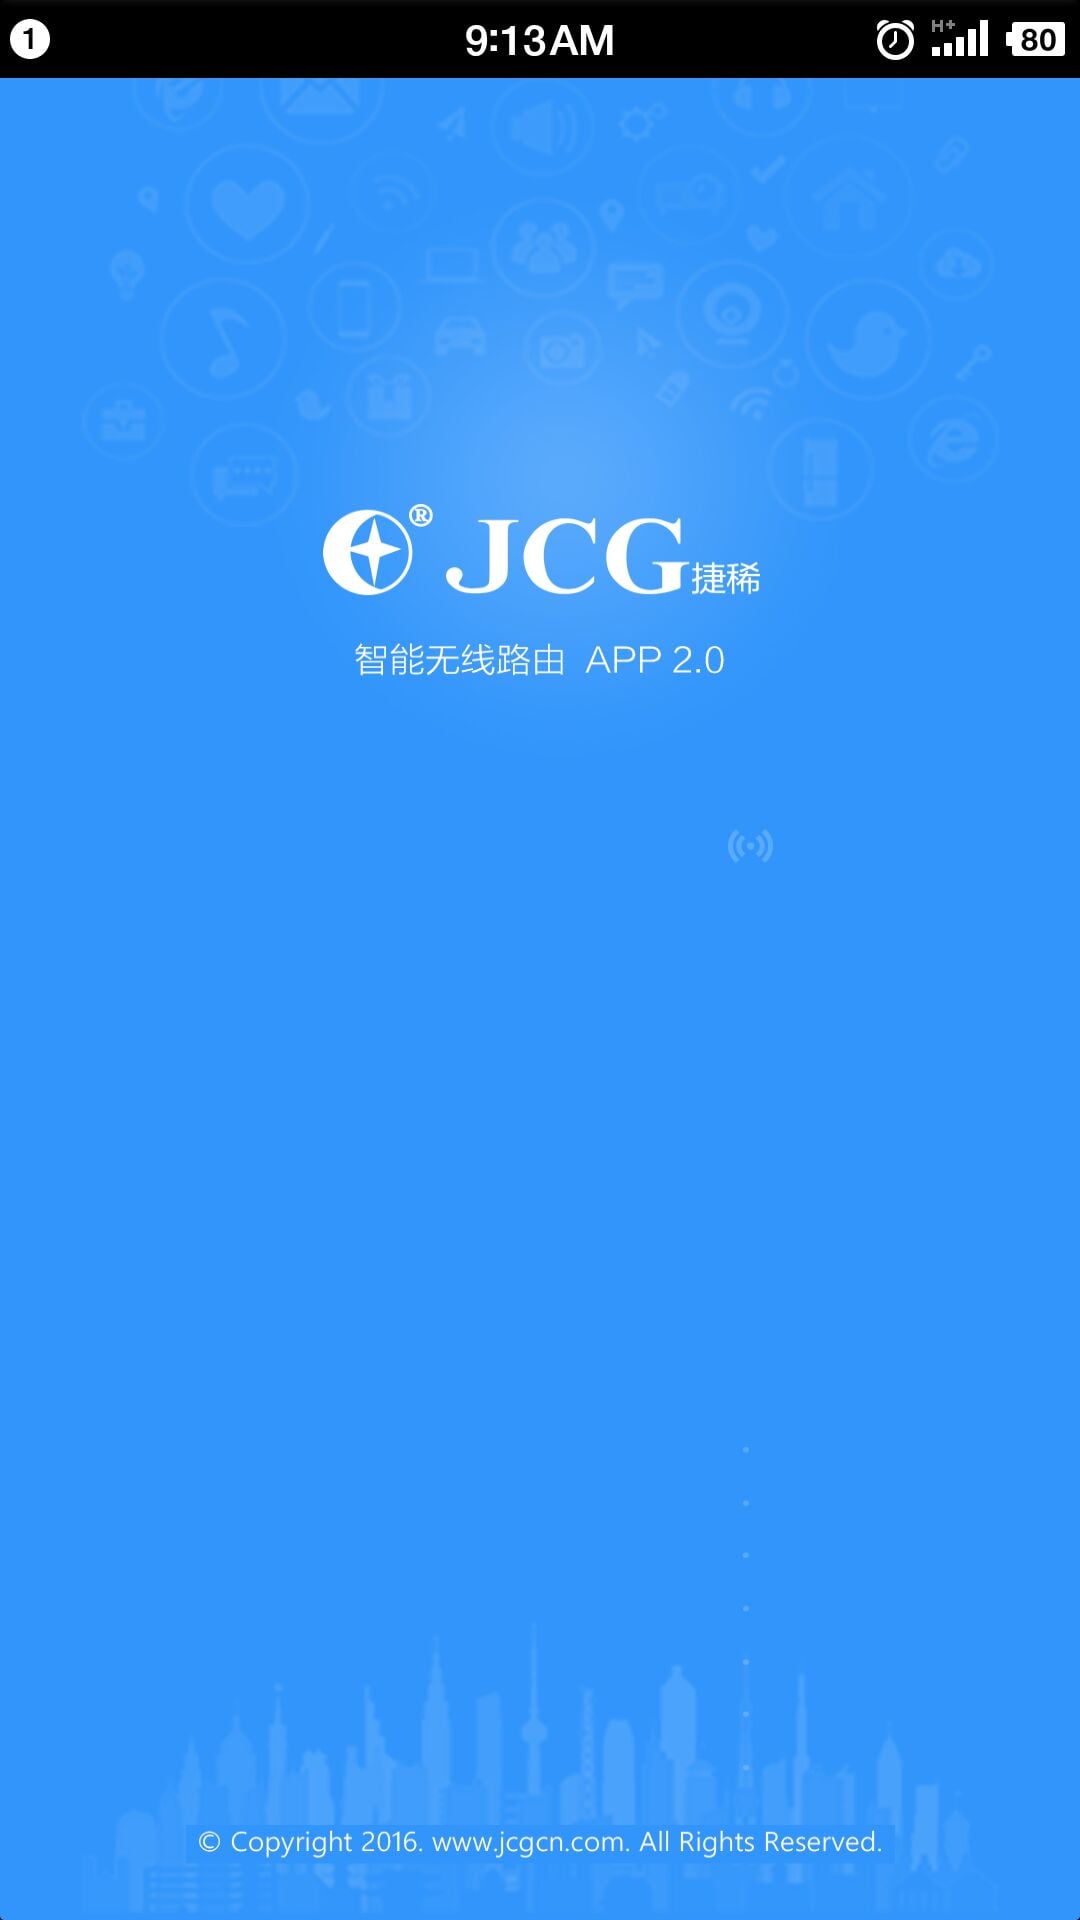 jcg智能路由app下载